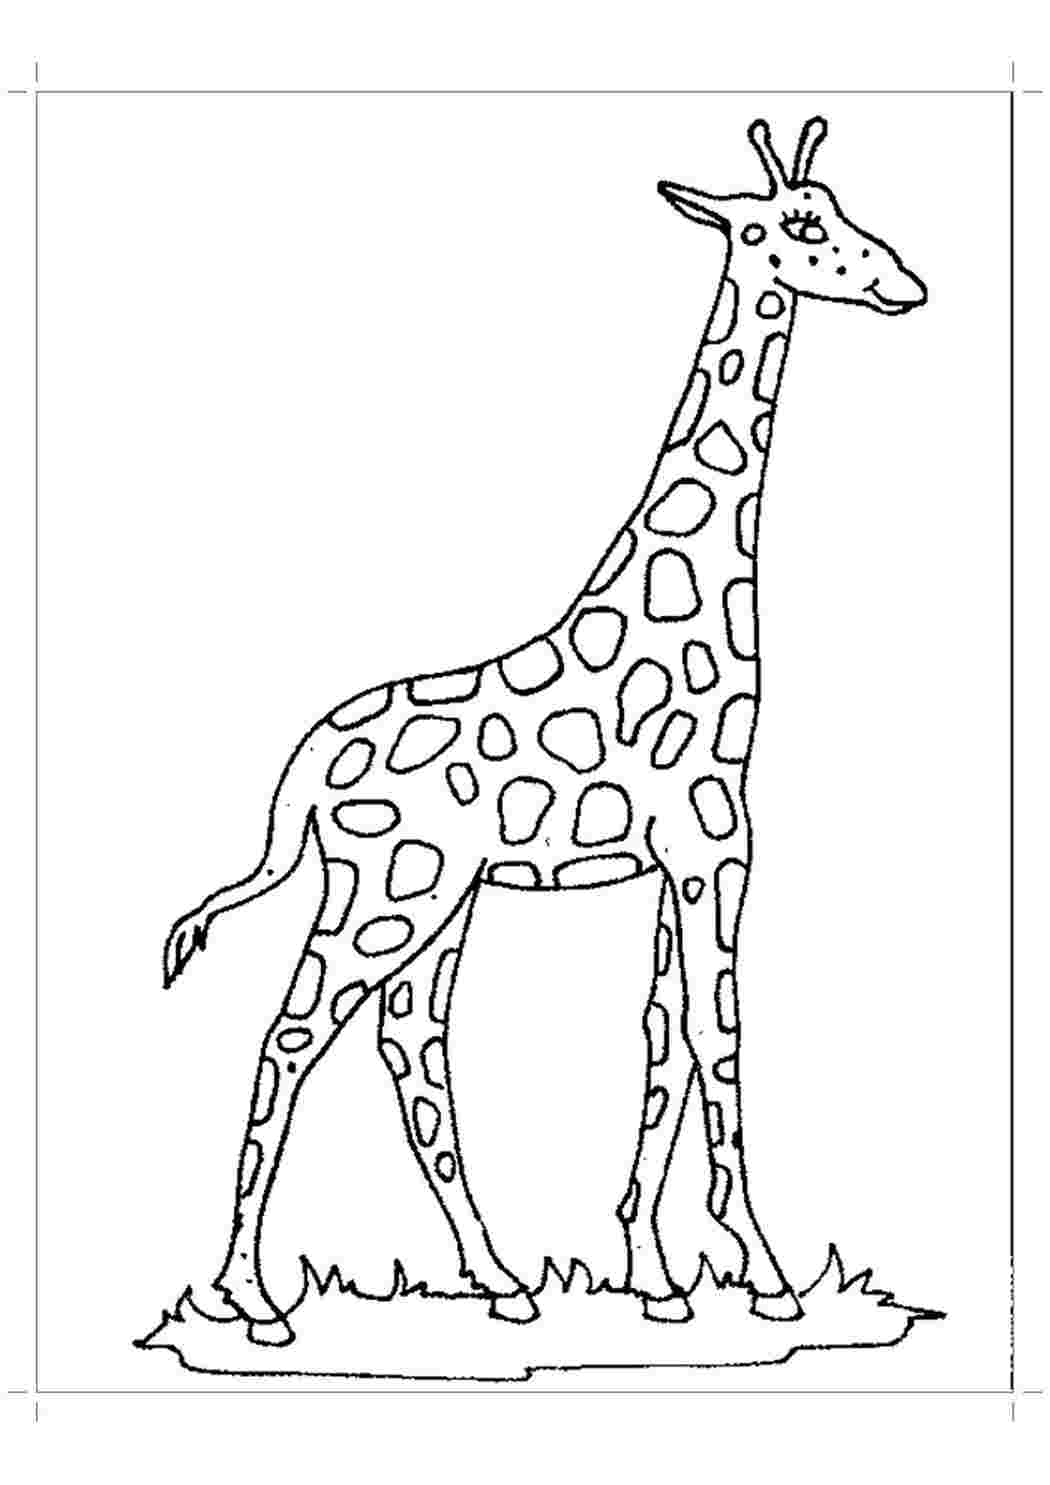 Раскраска жираф Изображения – скачать бесплатно на Freepik